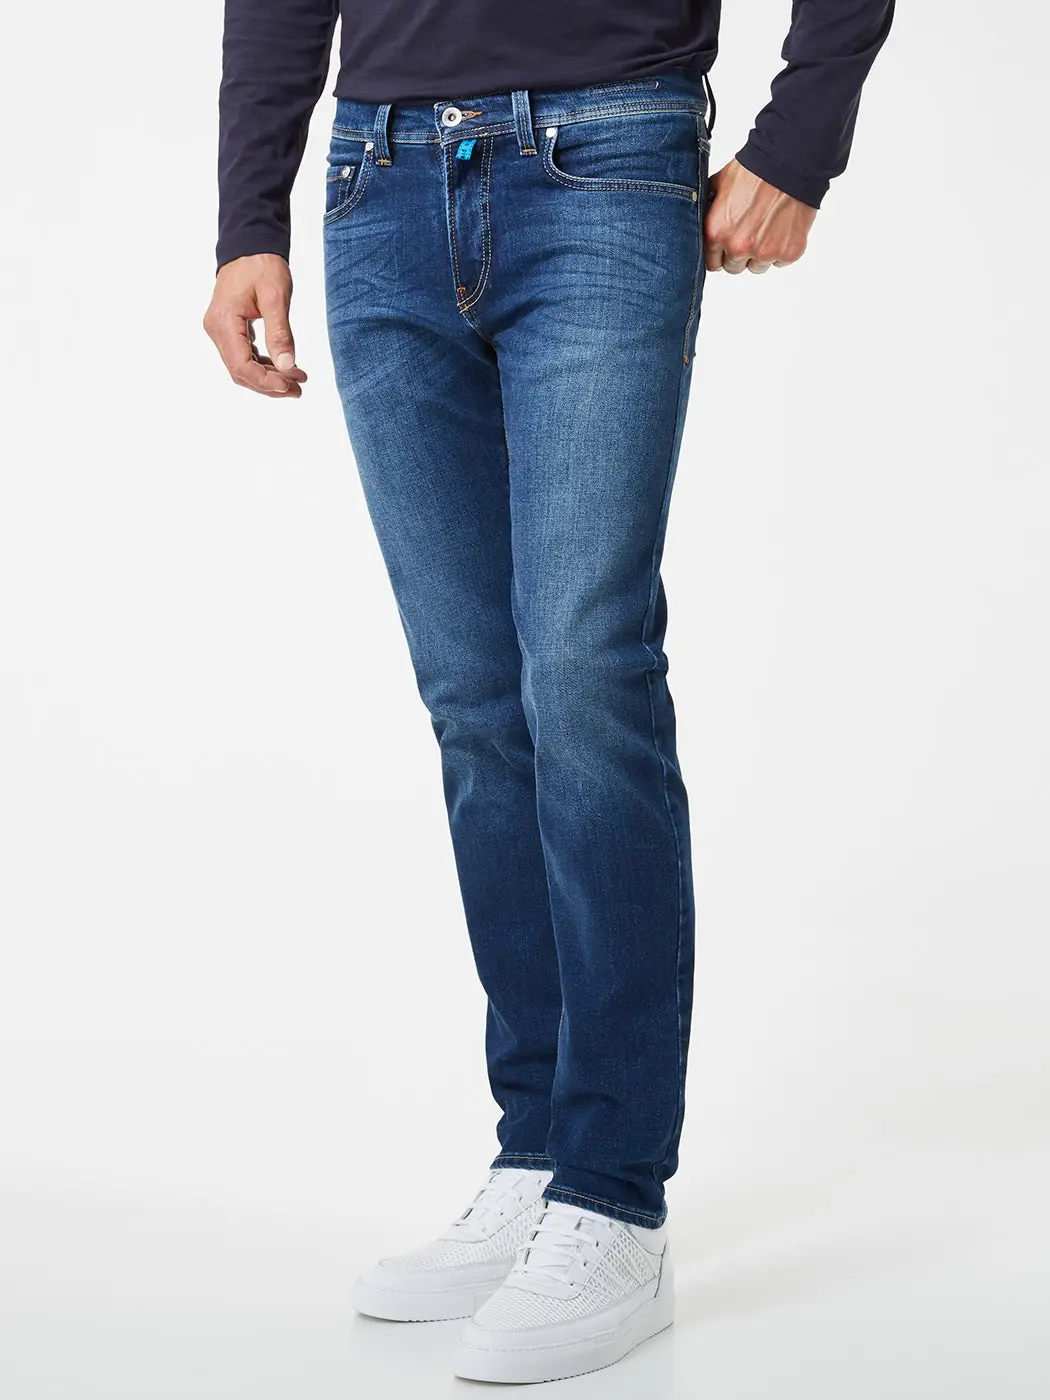 Betrokken halfgeleider Herdenkings pierre cardin heren jeans | Smit mode